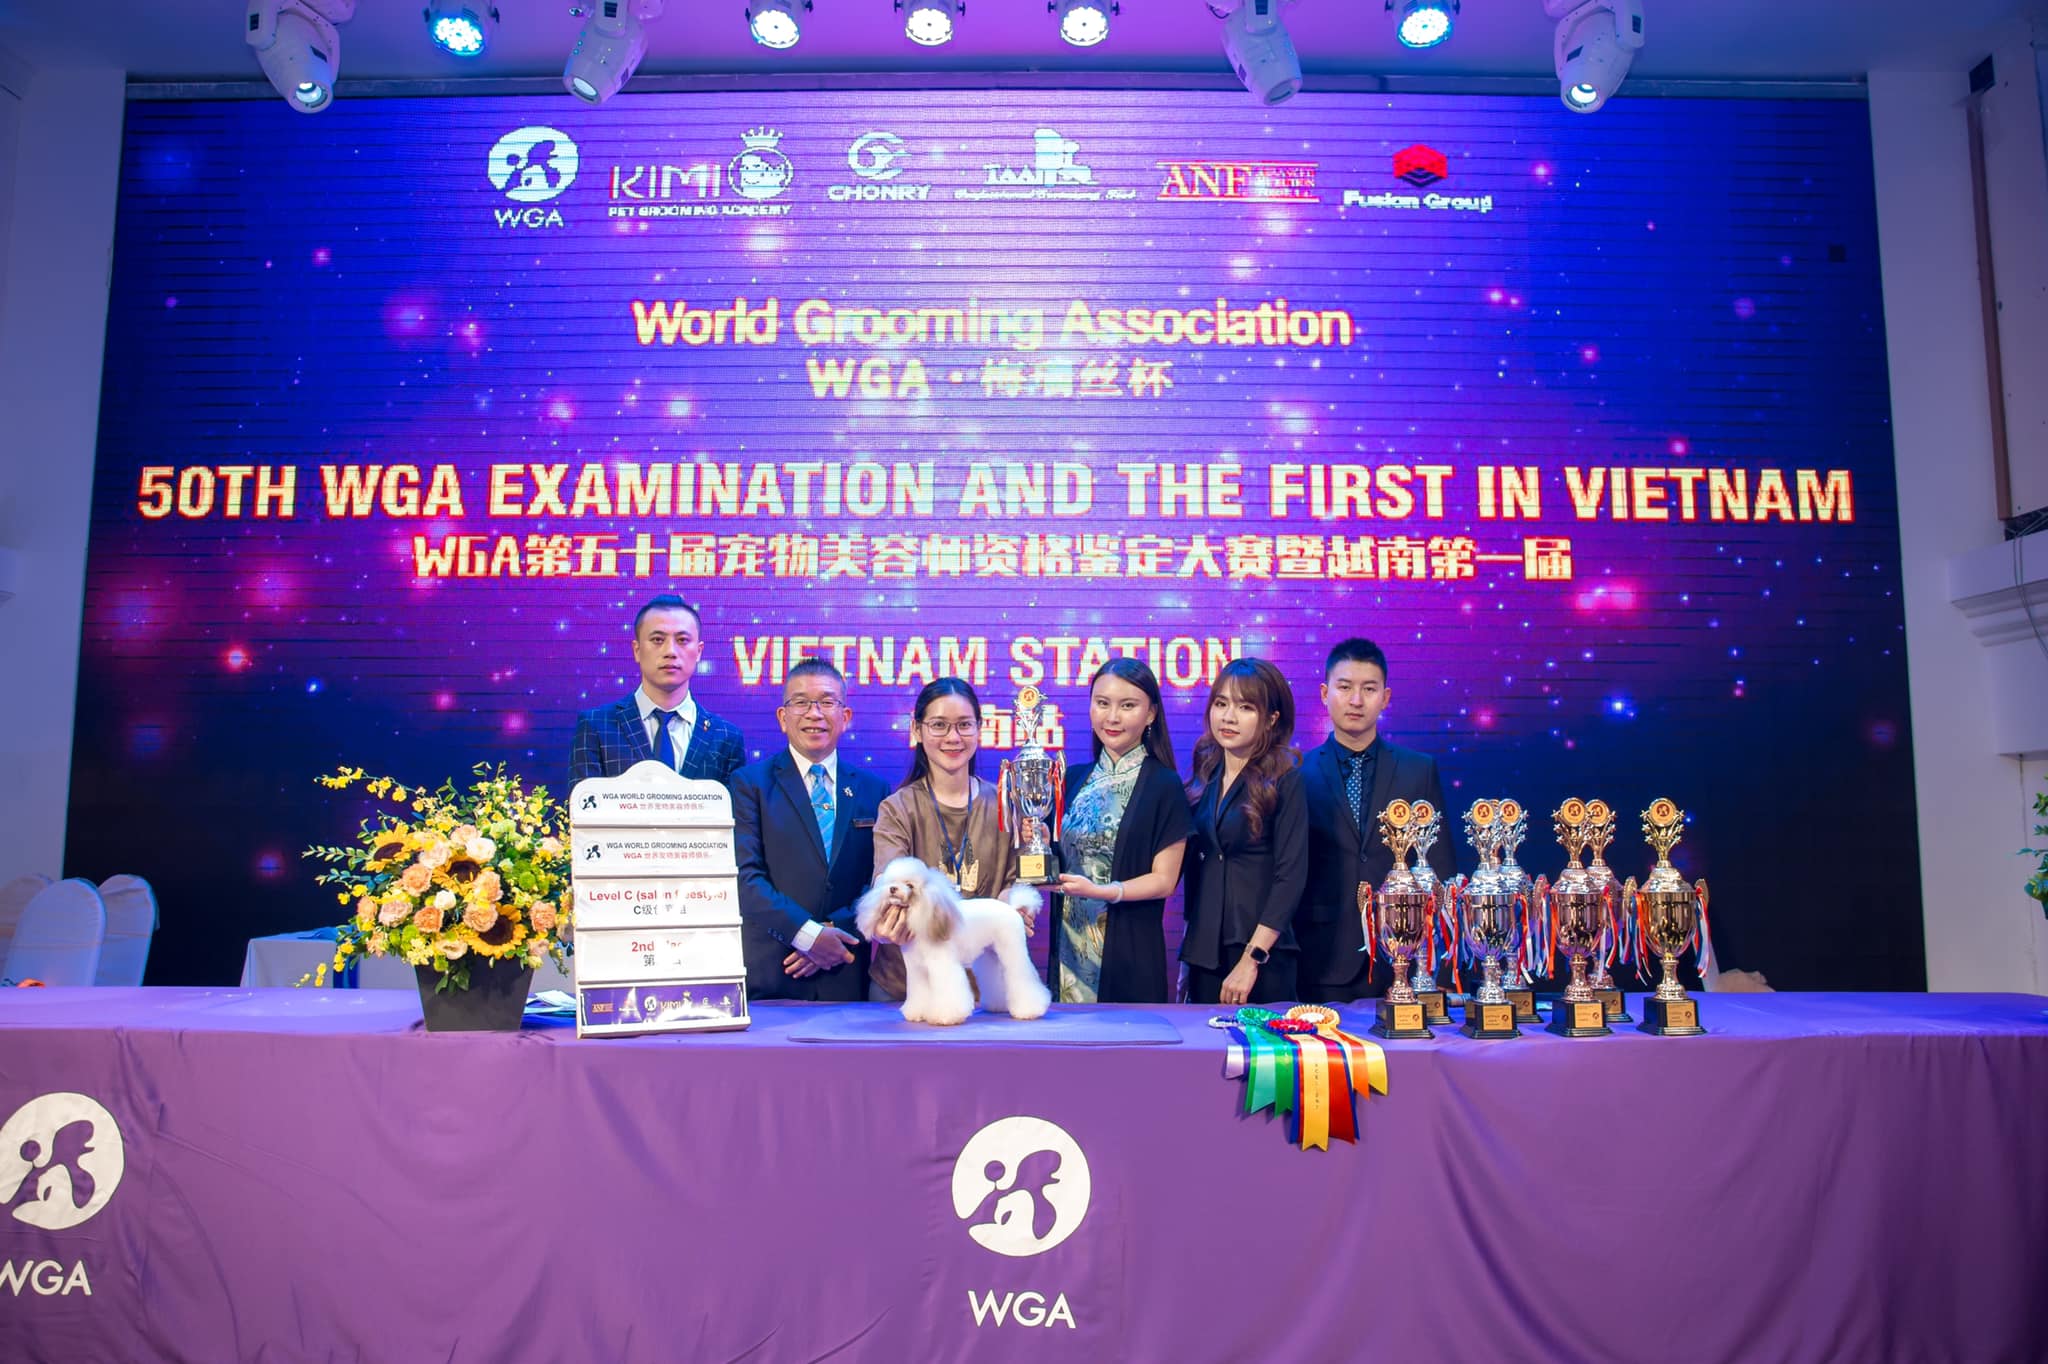 Học viên Đào Thu Hiền từ TPHCM tại Kimi Pet cùng cô Nguyễn Thùy Linh đã đạt được giải thưởng nhì hạng mục Salon trong cuộc thi cắt tỉa lông thú cưng quốc tế World Grooming Association